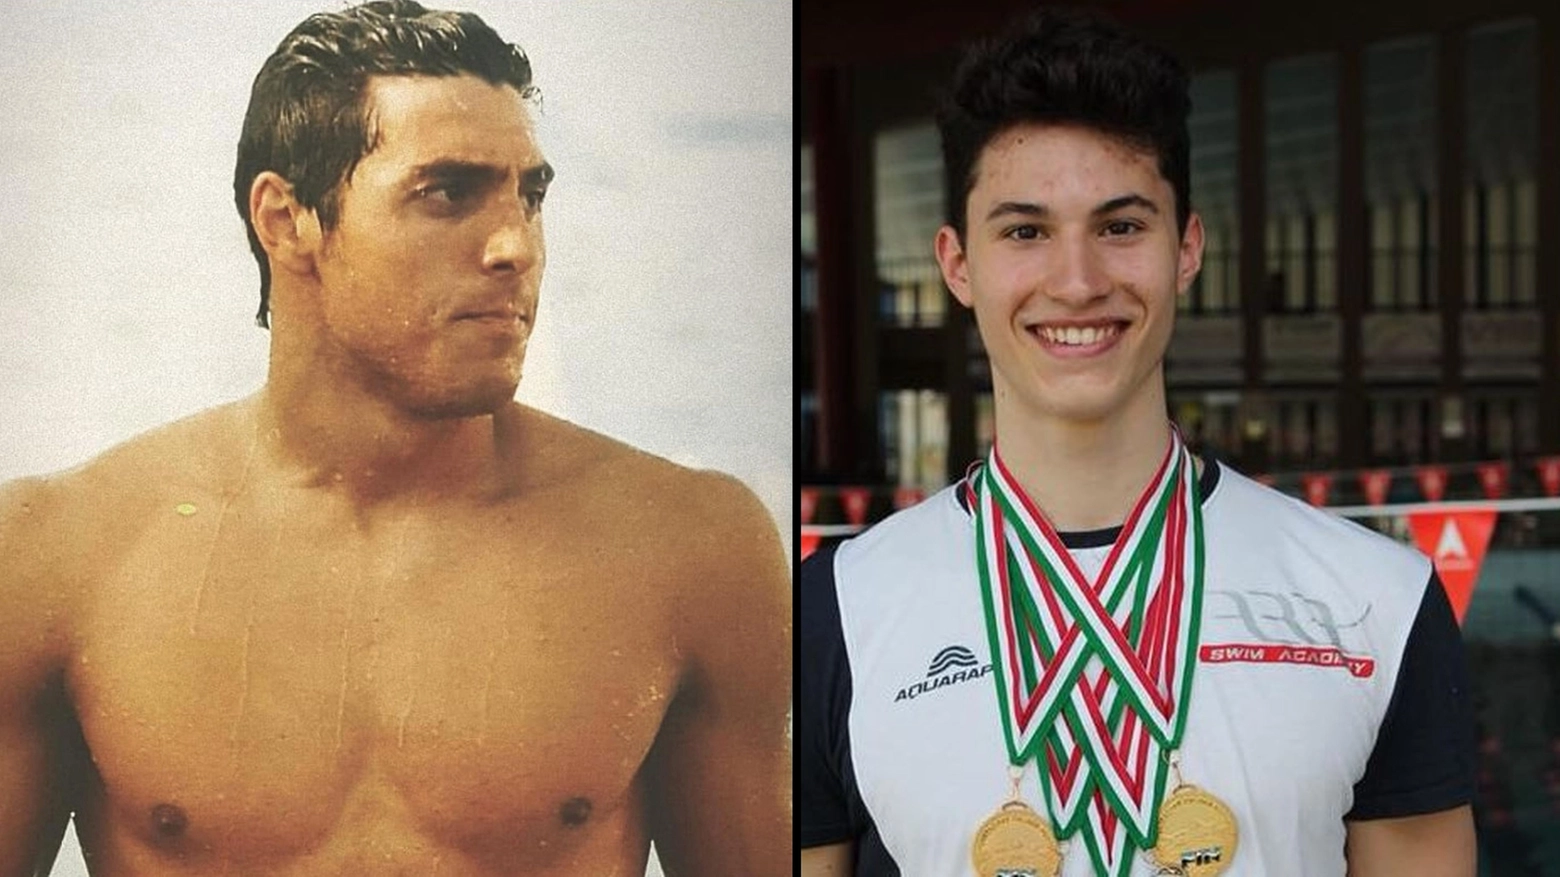 Gioele Rossetti e Fabio Lombini, i nuotatori morti nell'incidente aereo di Nettuno